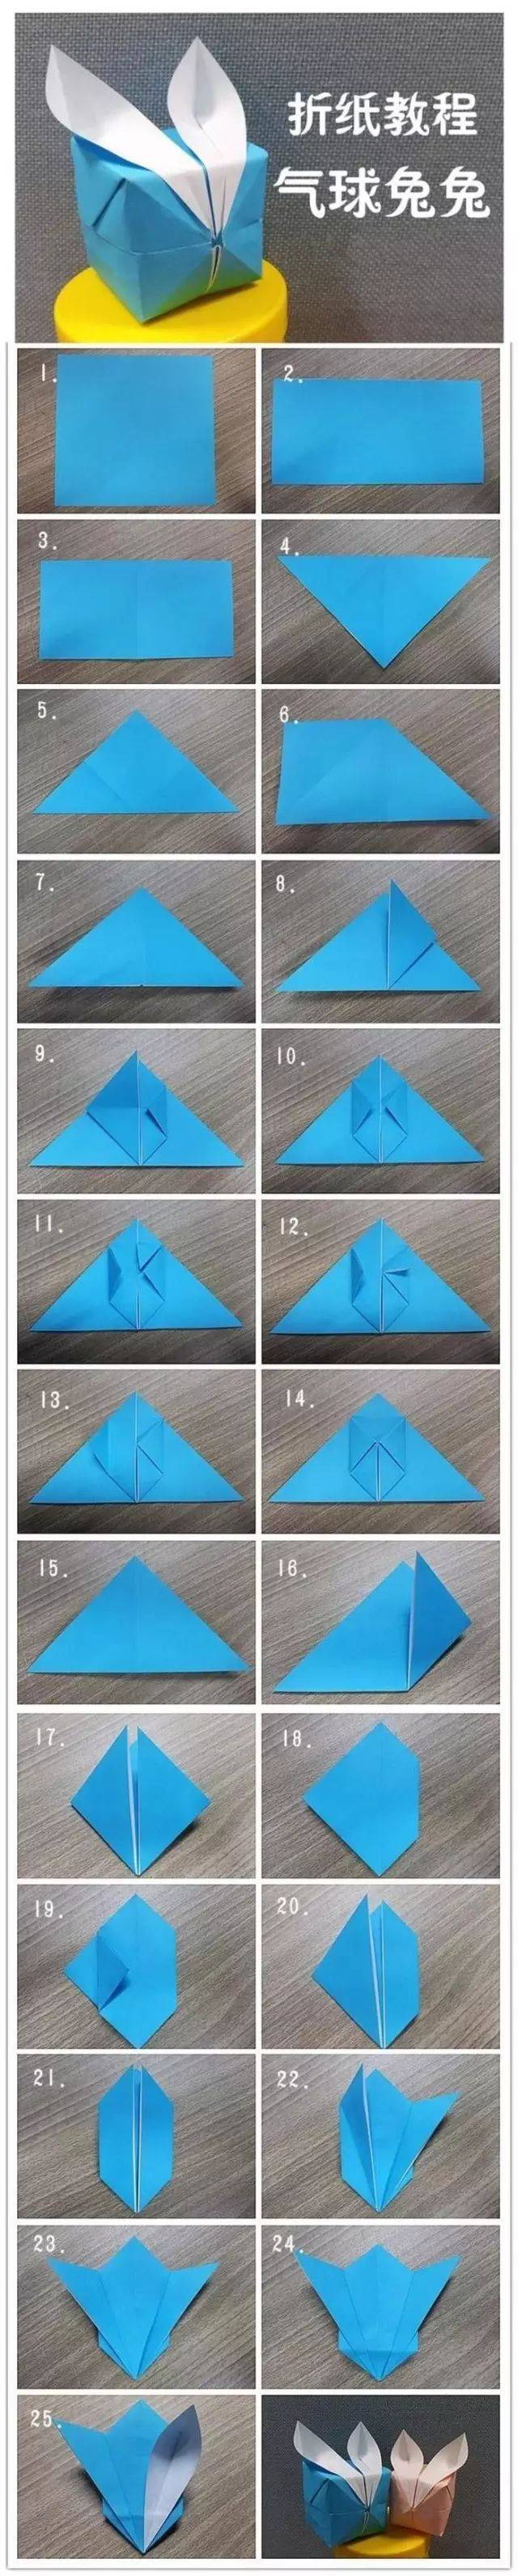 03 折纸气球兔子 主要材料:各色彩纸 制作步骤:*注意:折痕是关键 04